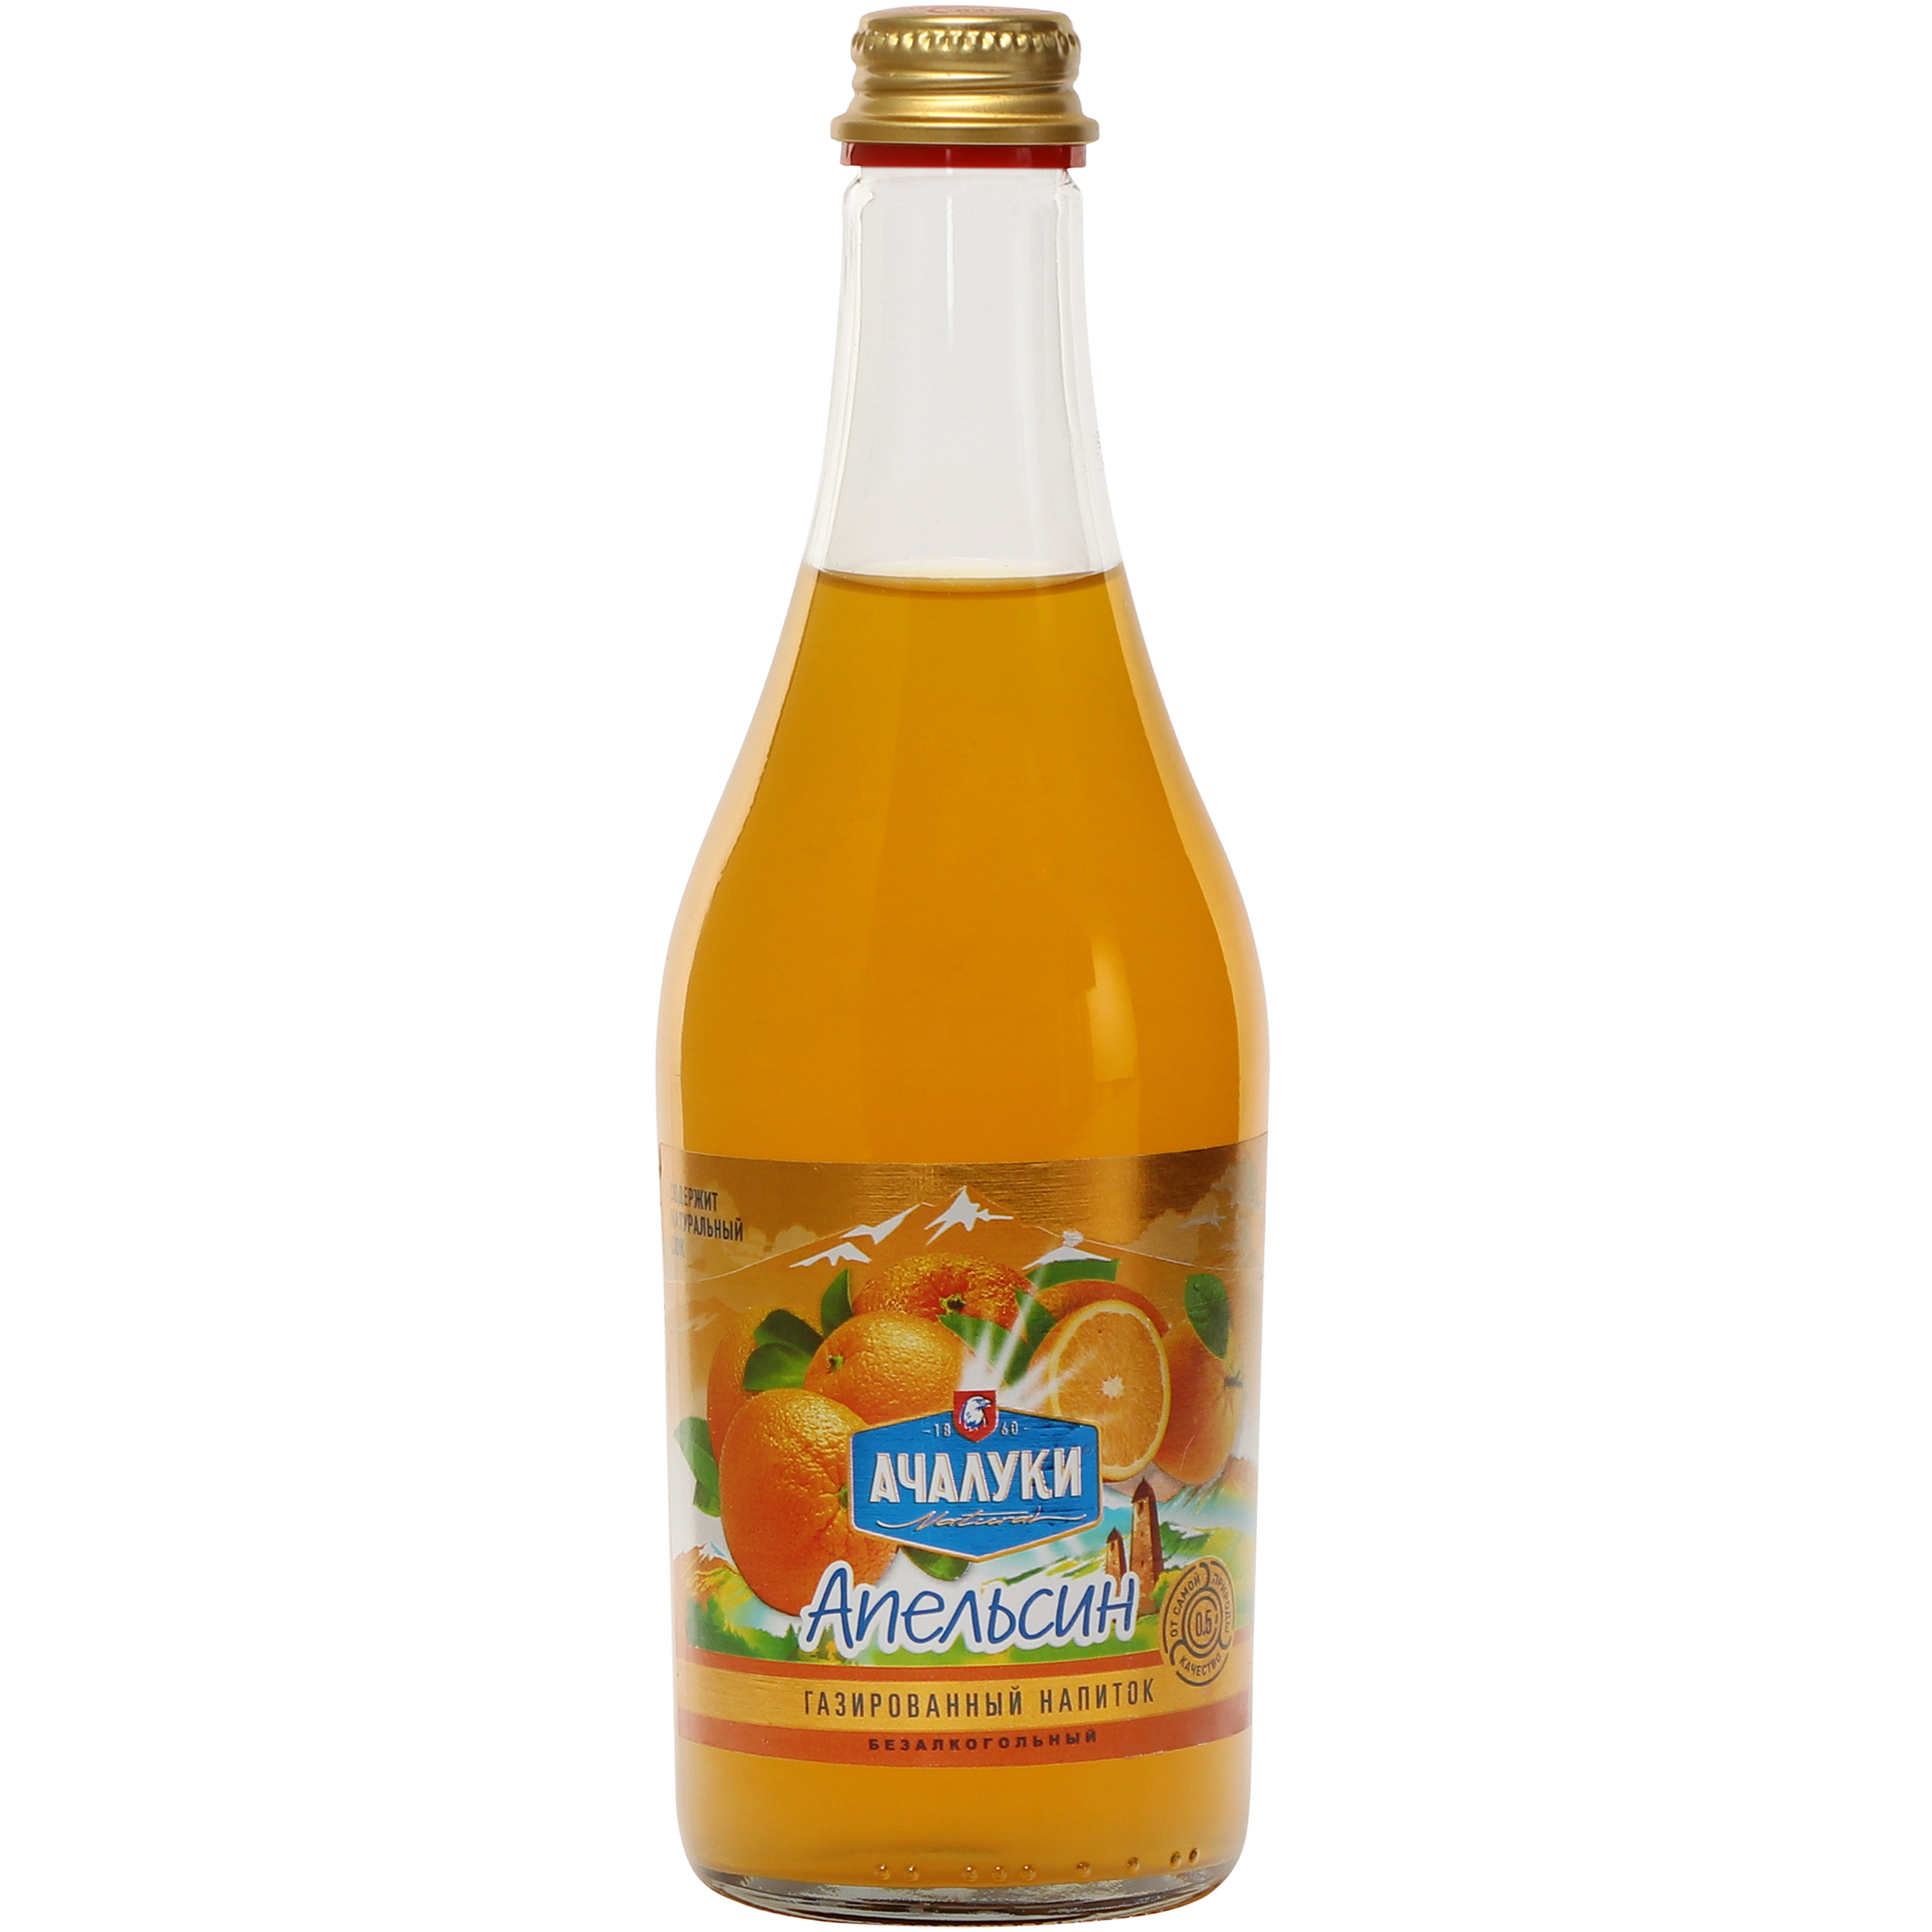 Напиток безалкогольный Ачалуки Апельсин газированный, 0,5 л напиток san pellegrino melograno e arancia гранат и апельсин 0 33 литра газ ж б 24 шт в уп